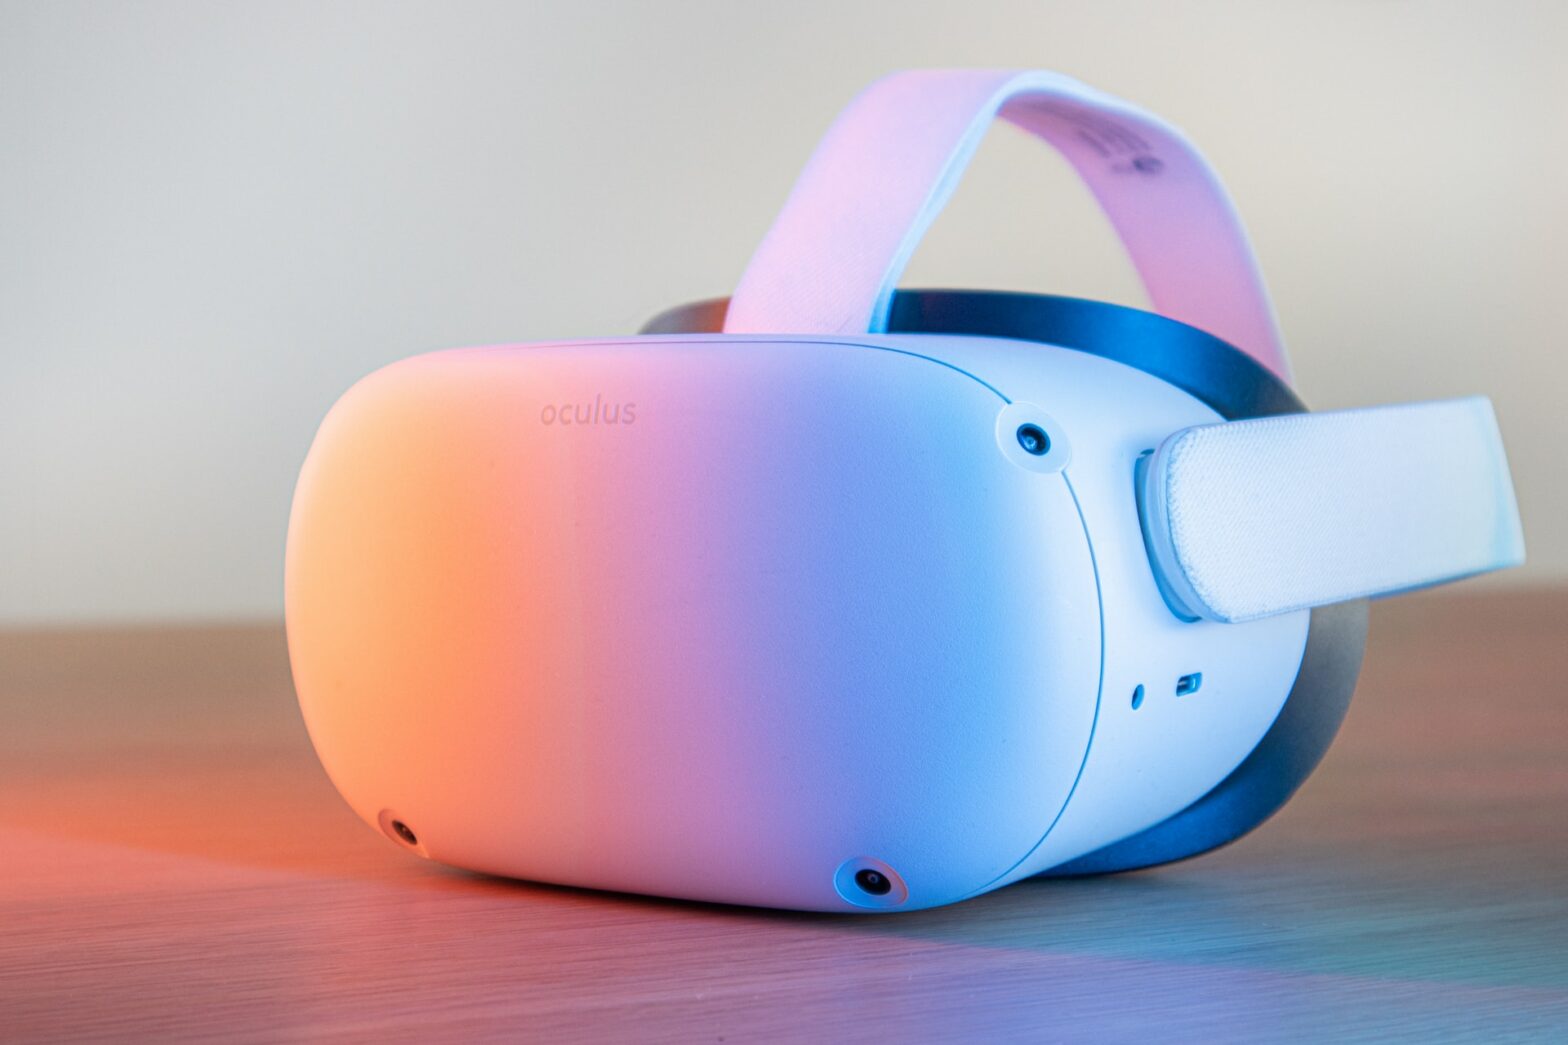 A VR goggle